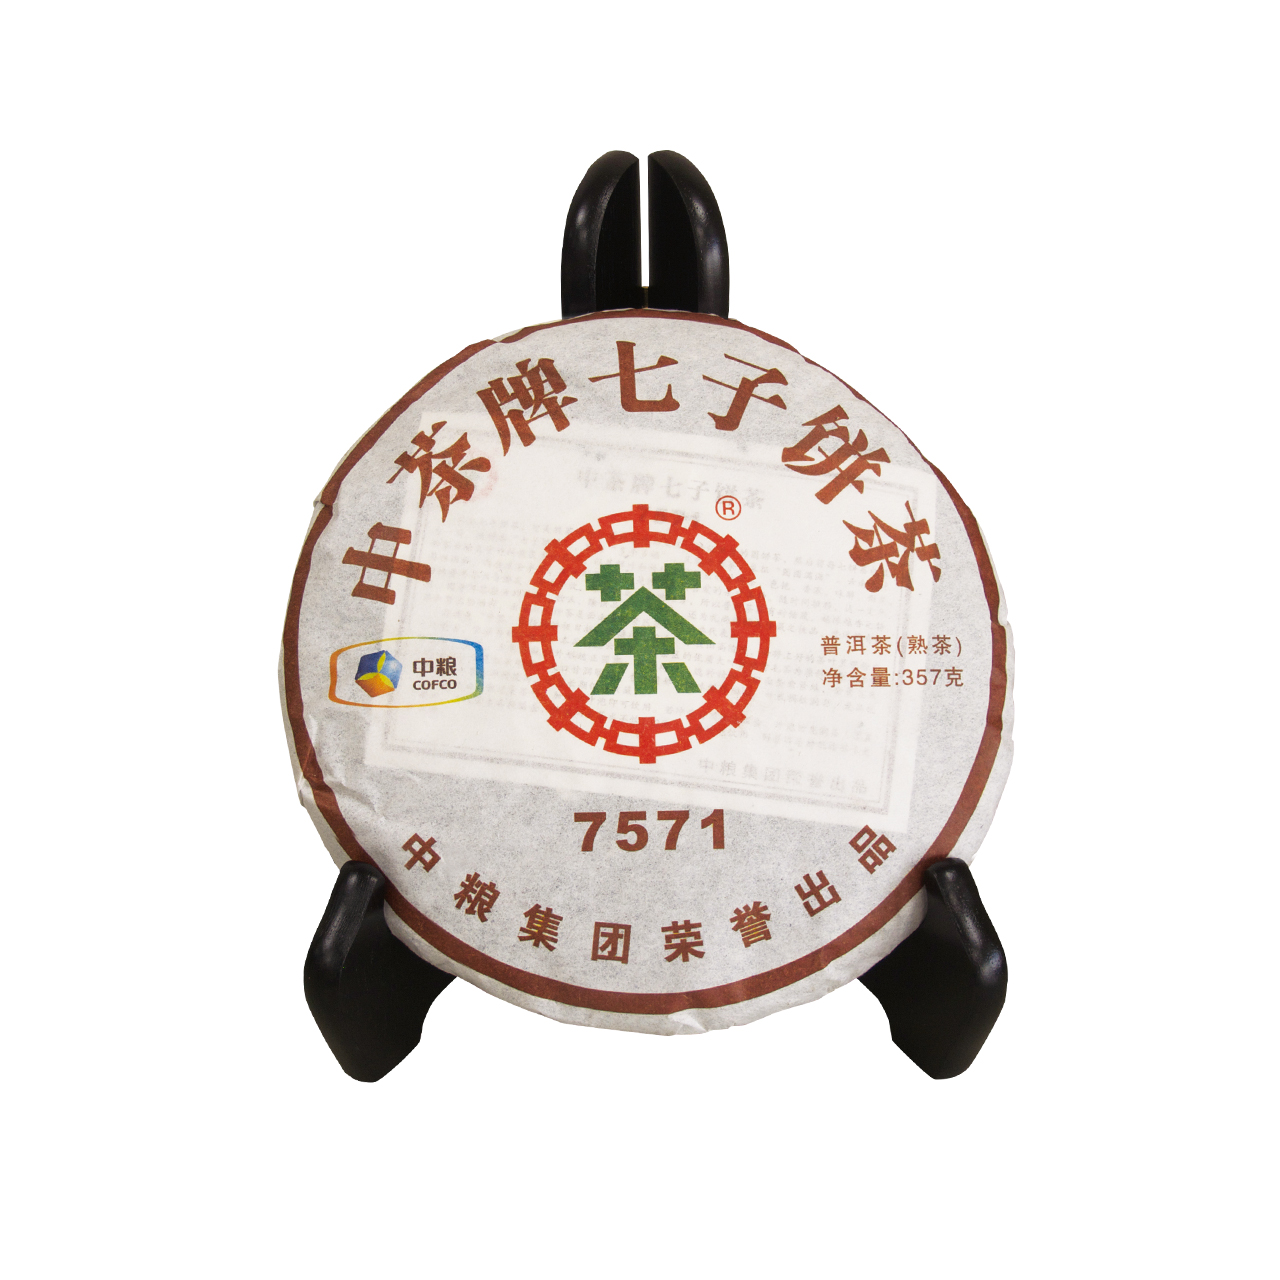 中茶牌七子餅茶(7571)